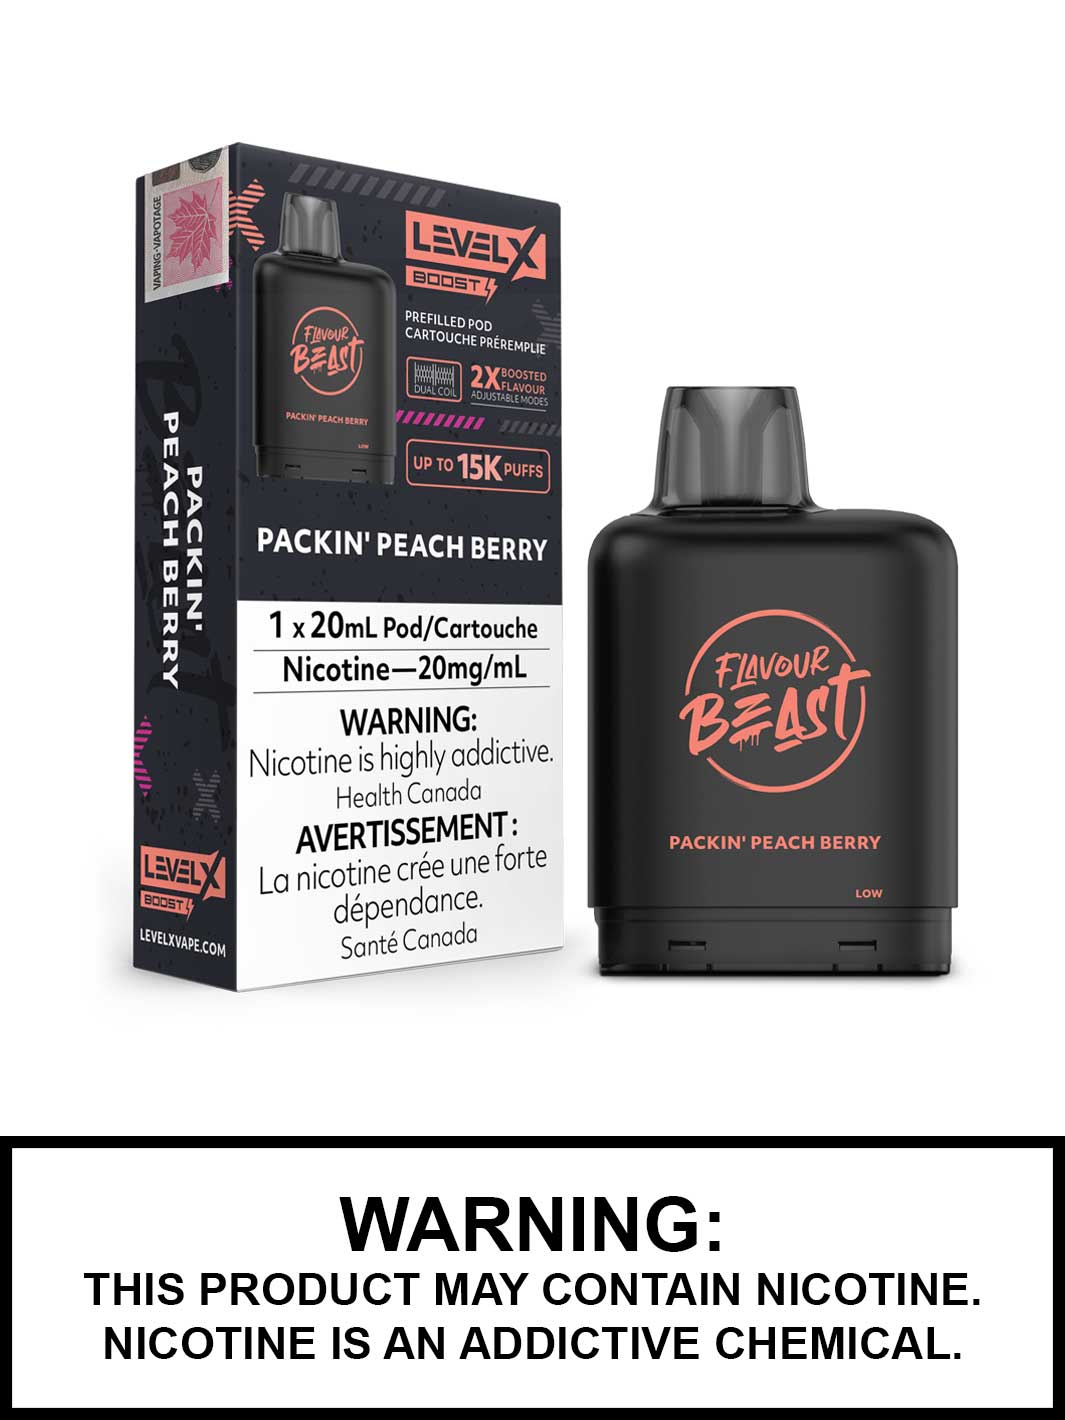 Packin Peach Berry Flavour Beast Level X Boost Pods, Level X Vape, Vape360 Canada